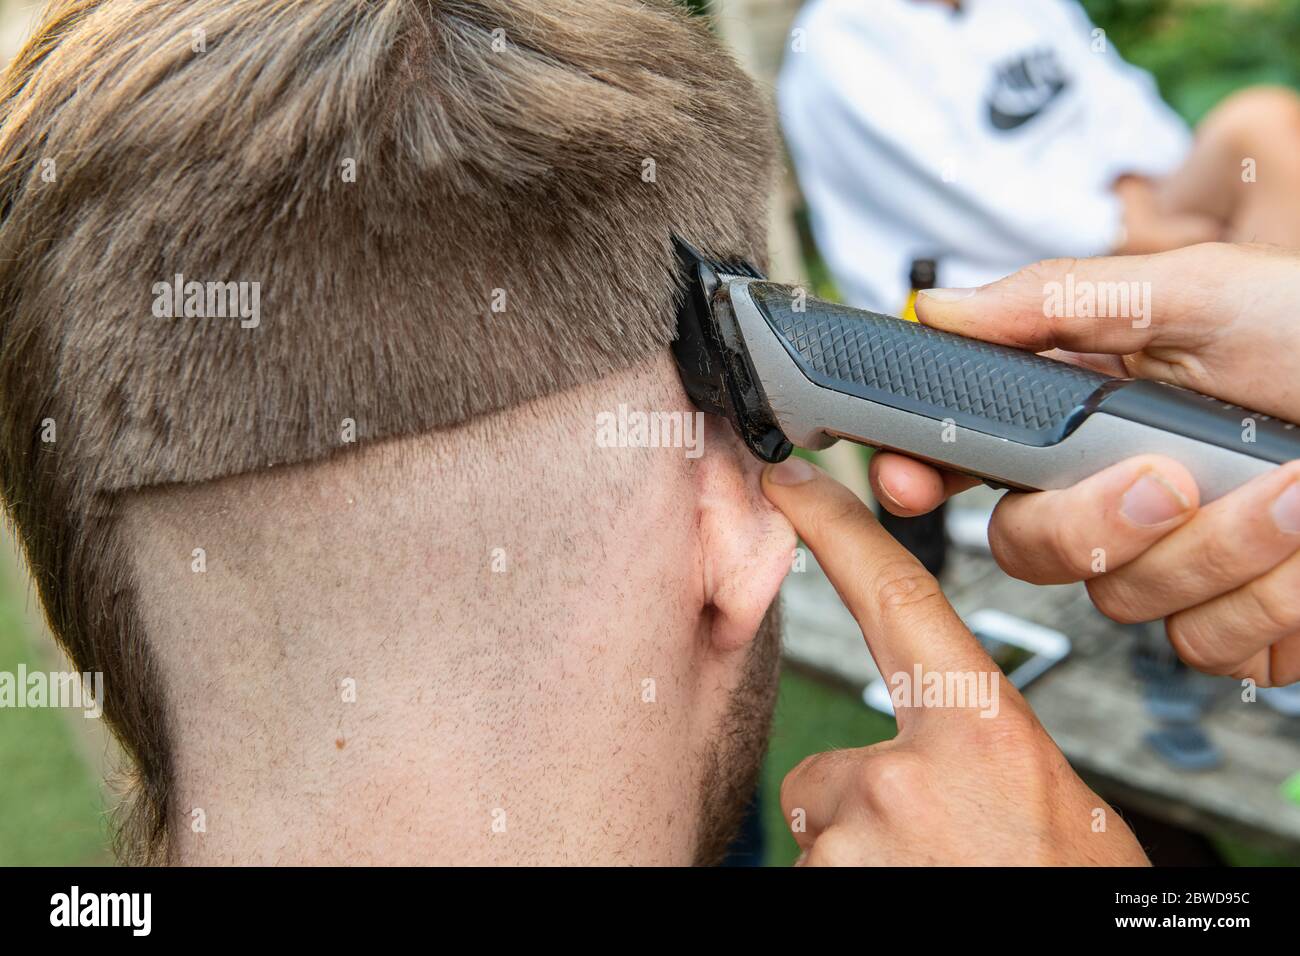 Un hombre intenta cortar el pelo de otro hombre durante el cierre del coronavirus cuando los peluqueros están cerrados, dejando la cola de una rata abajo un lado de la cabeza Foto de stock